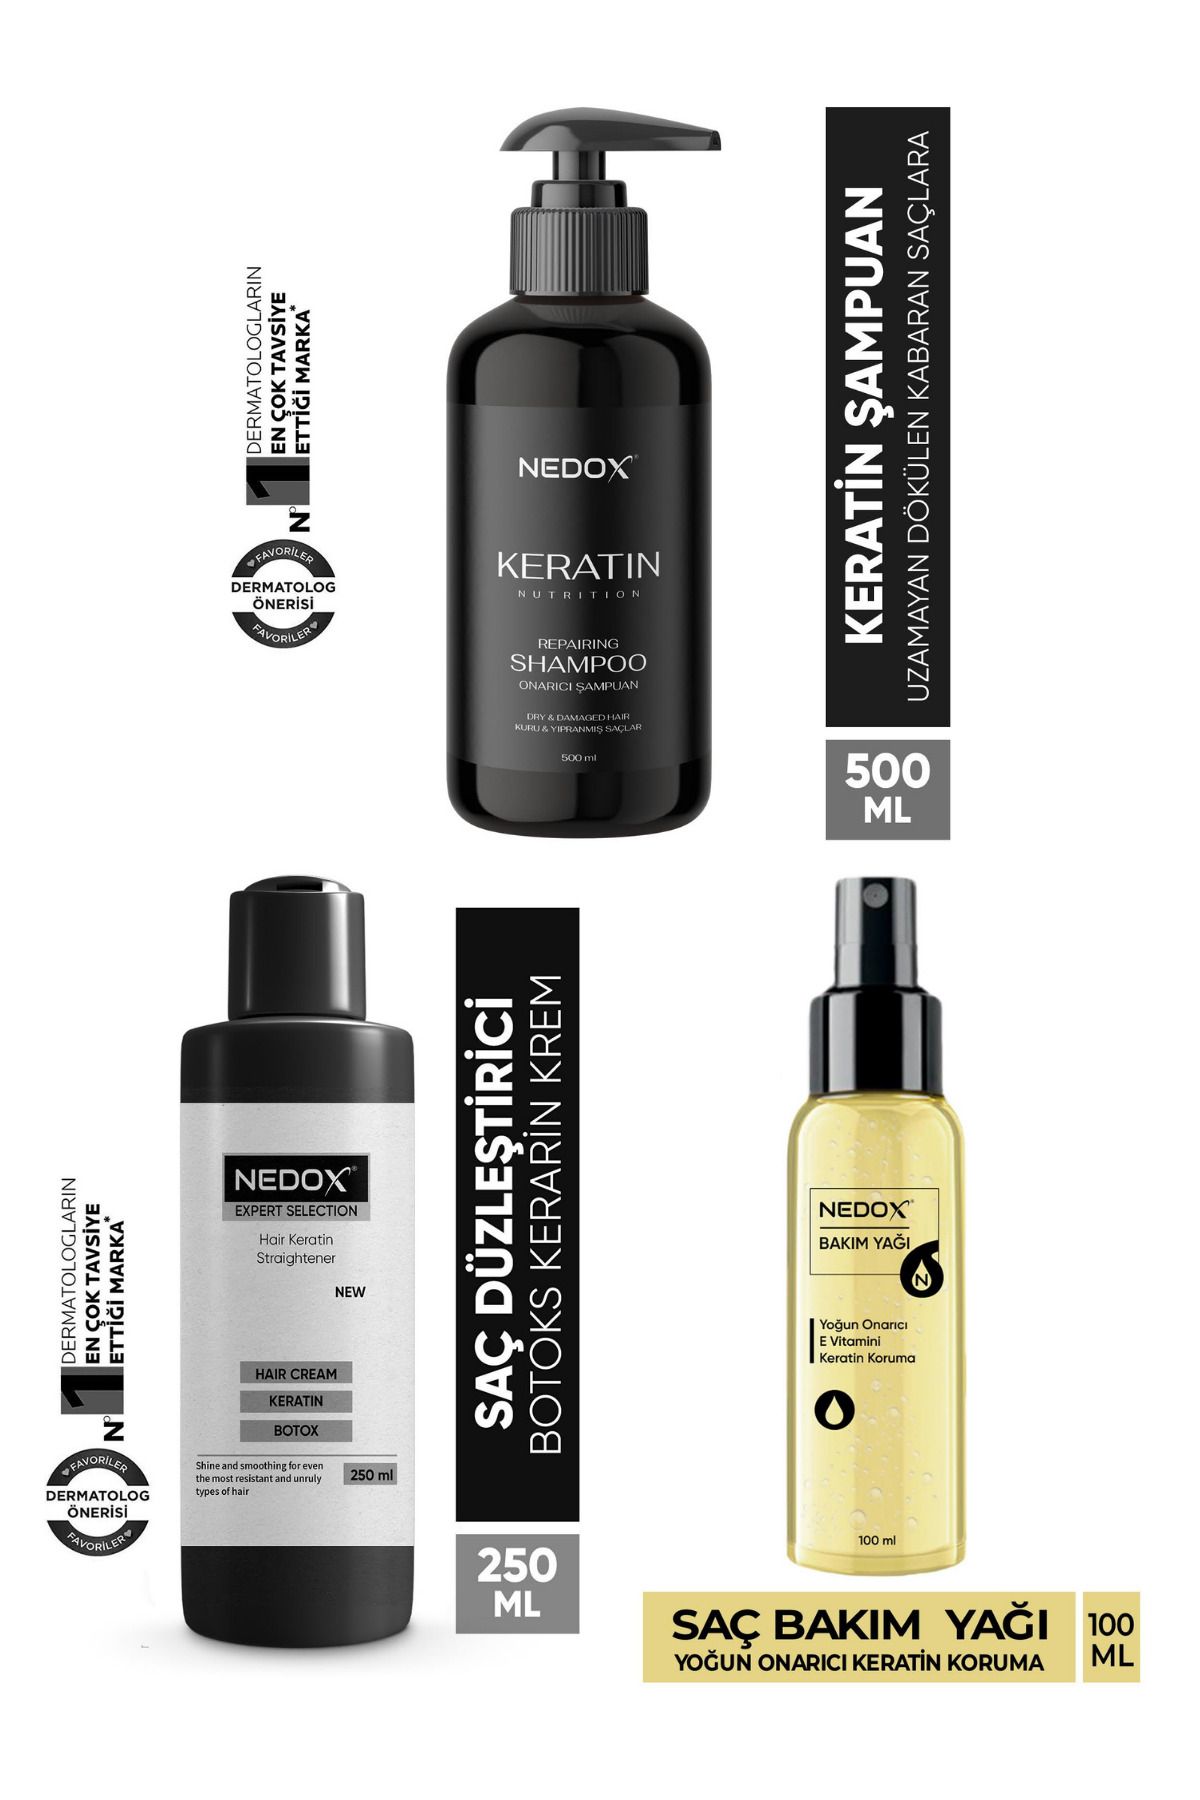 NEDOX E Vitaminli Saç Bakım Yağı/Keratinli Saç Bakım Şampuanı/Saç Düzleştirici Keratin Botoks Krem/3'lü